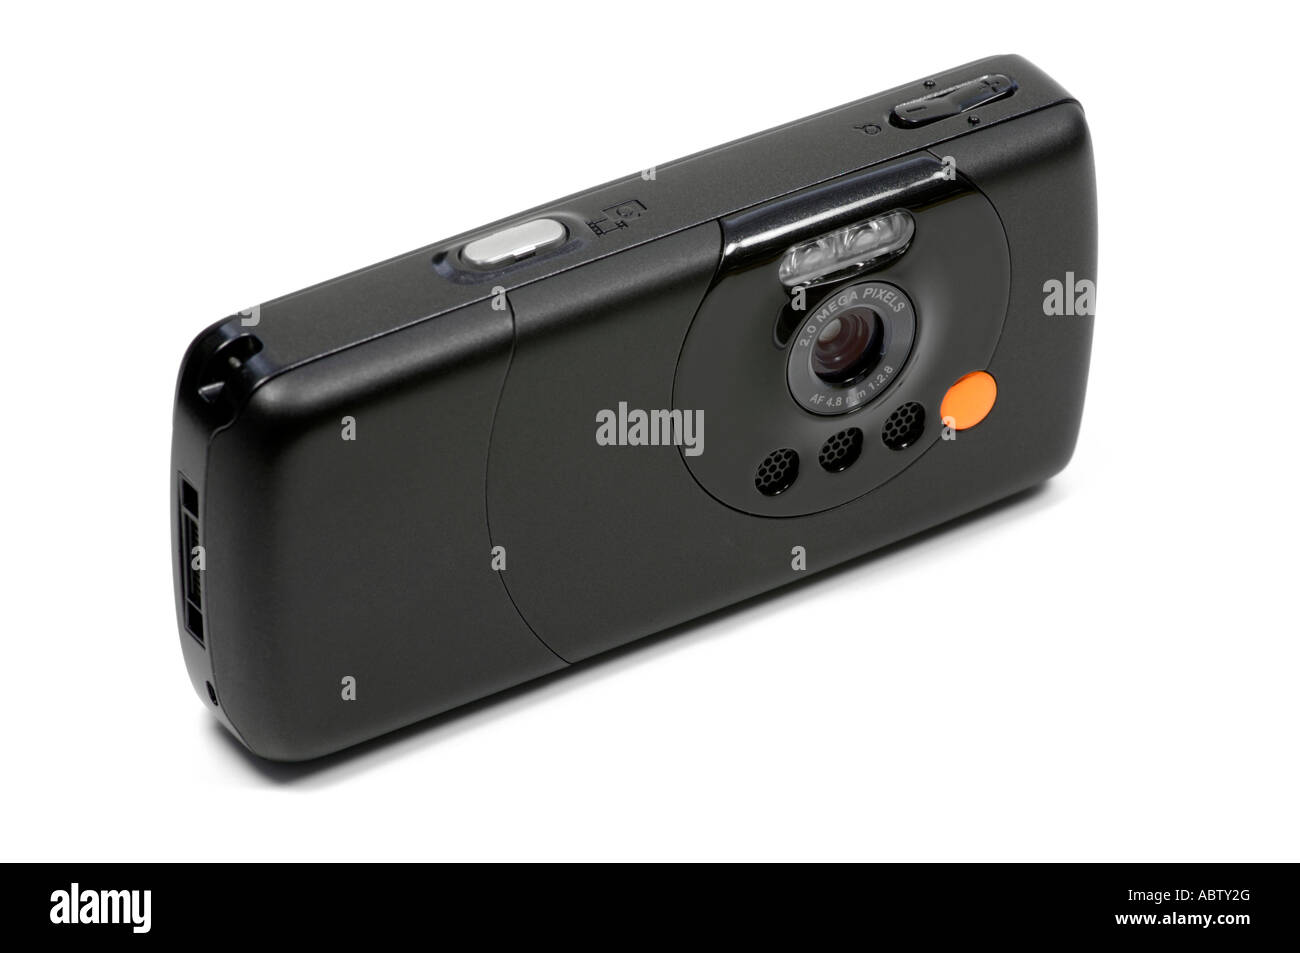 Telefono cellulare che mostra una fotocamera digitale Foto Stock